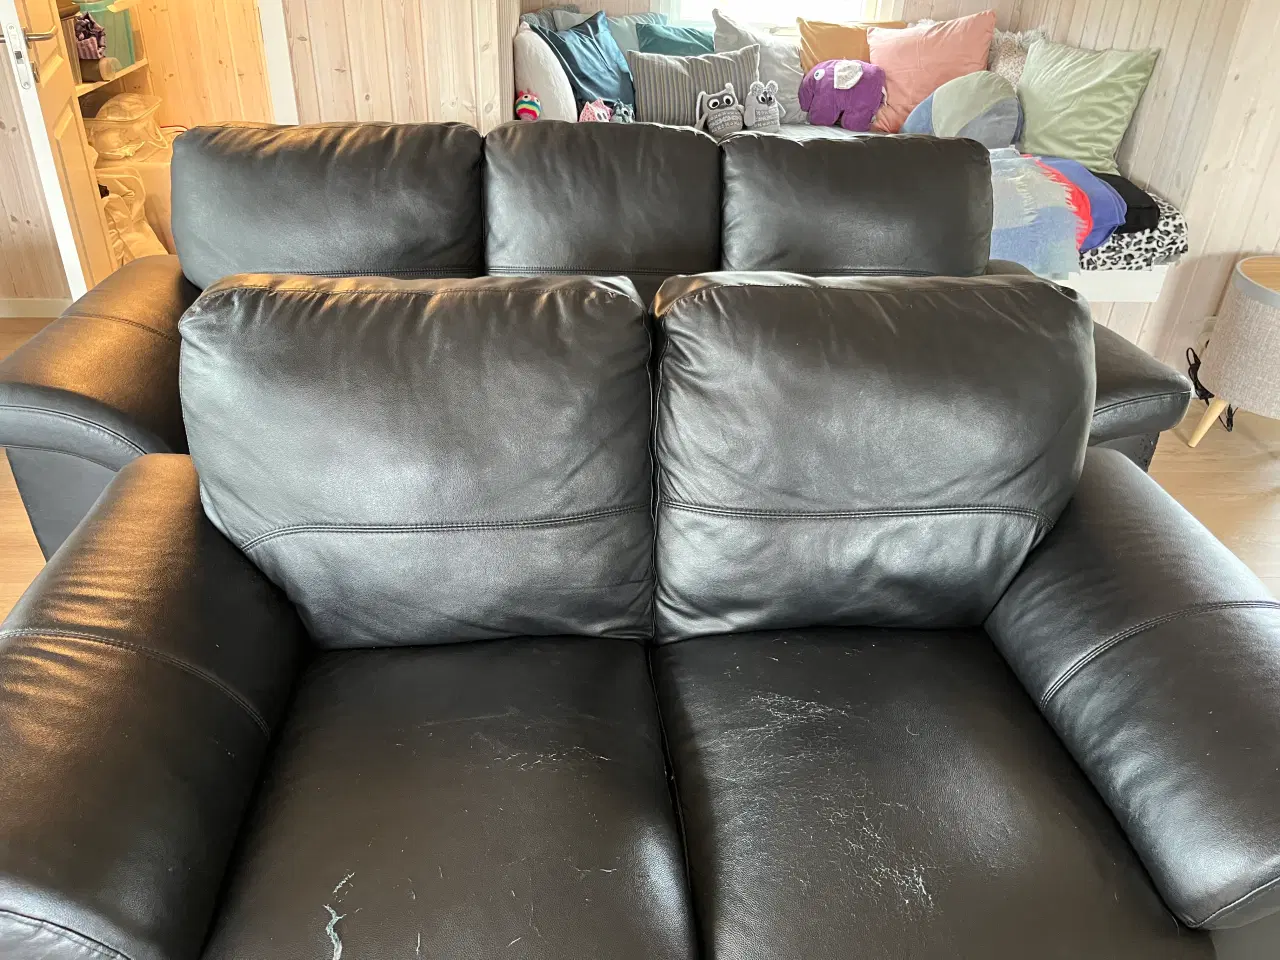 Billede 1 - Komfortable og gratis sofaer søger nyt hjem